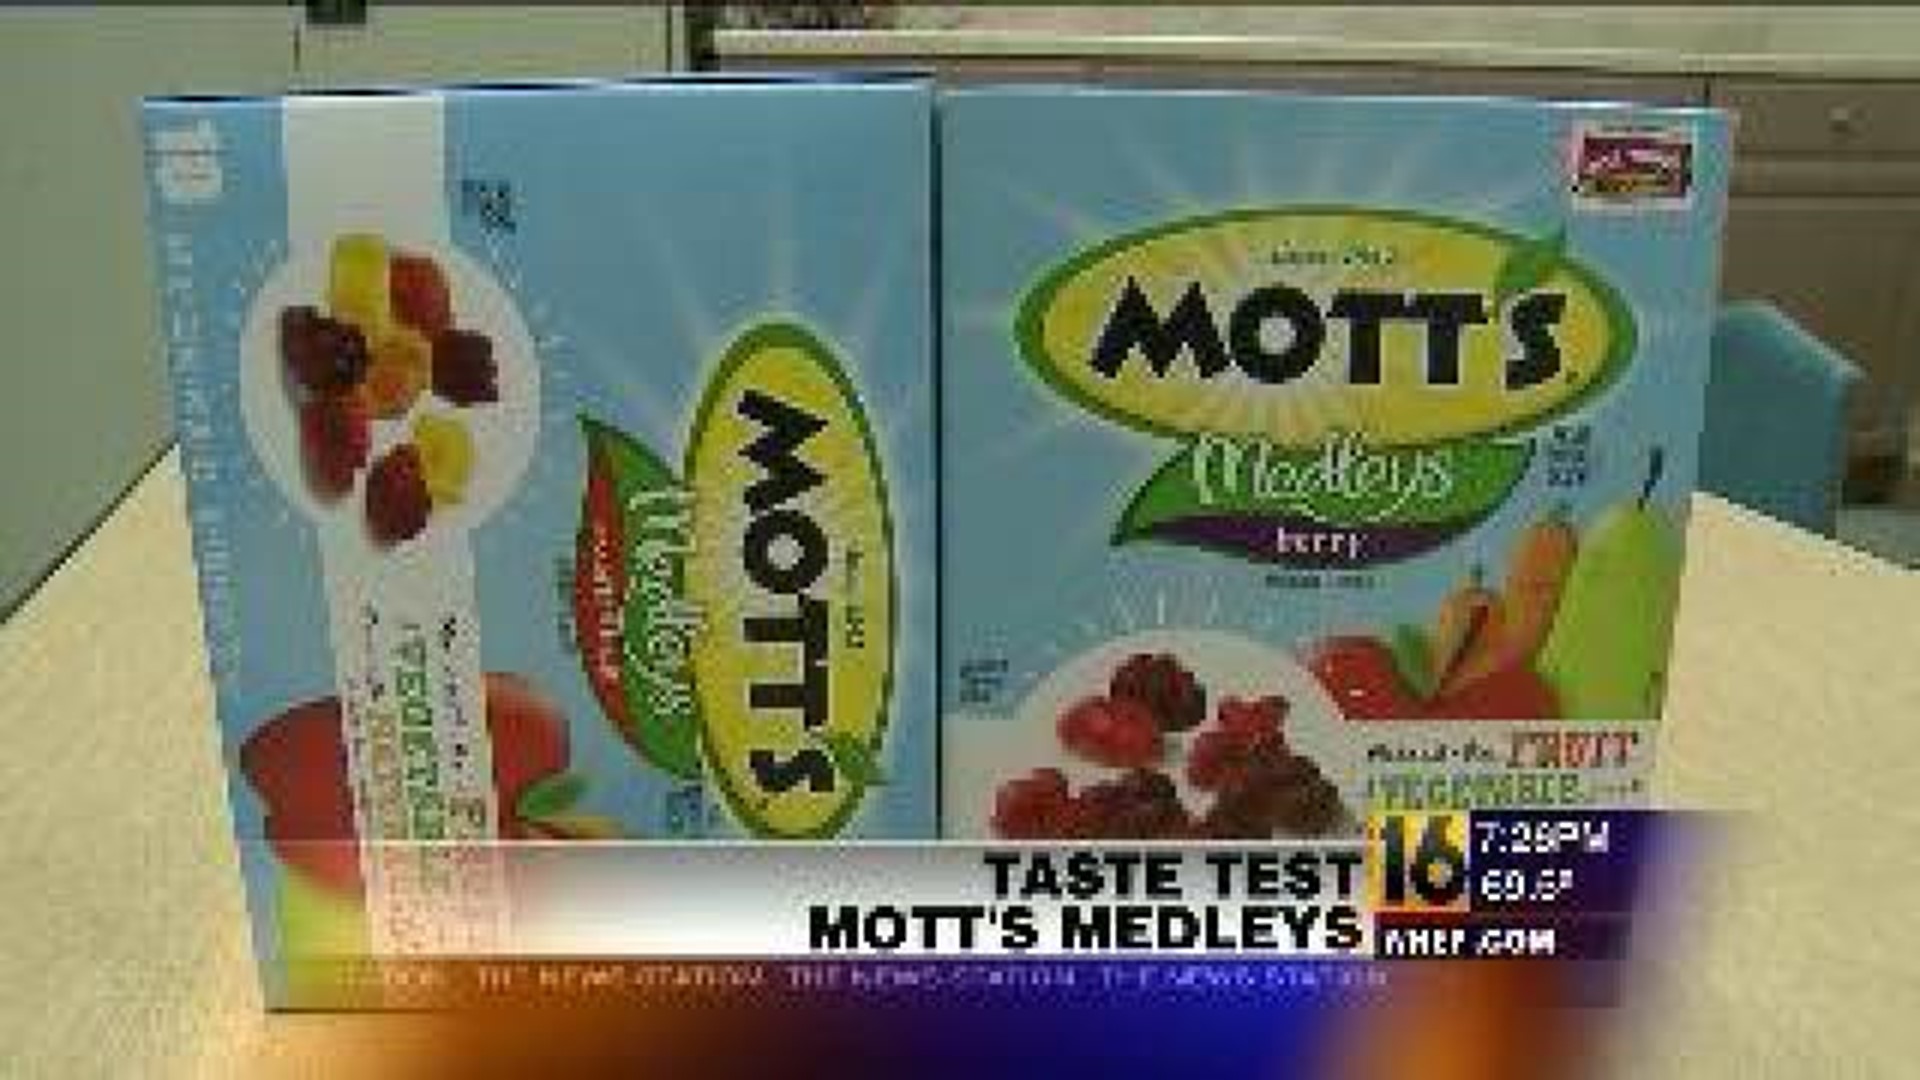 Taste Test: Mott's Medley's